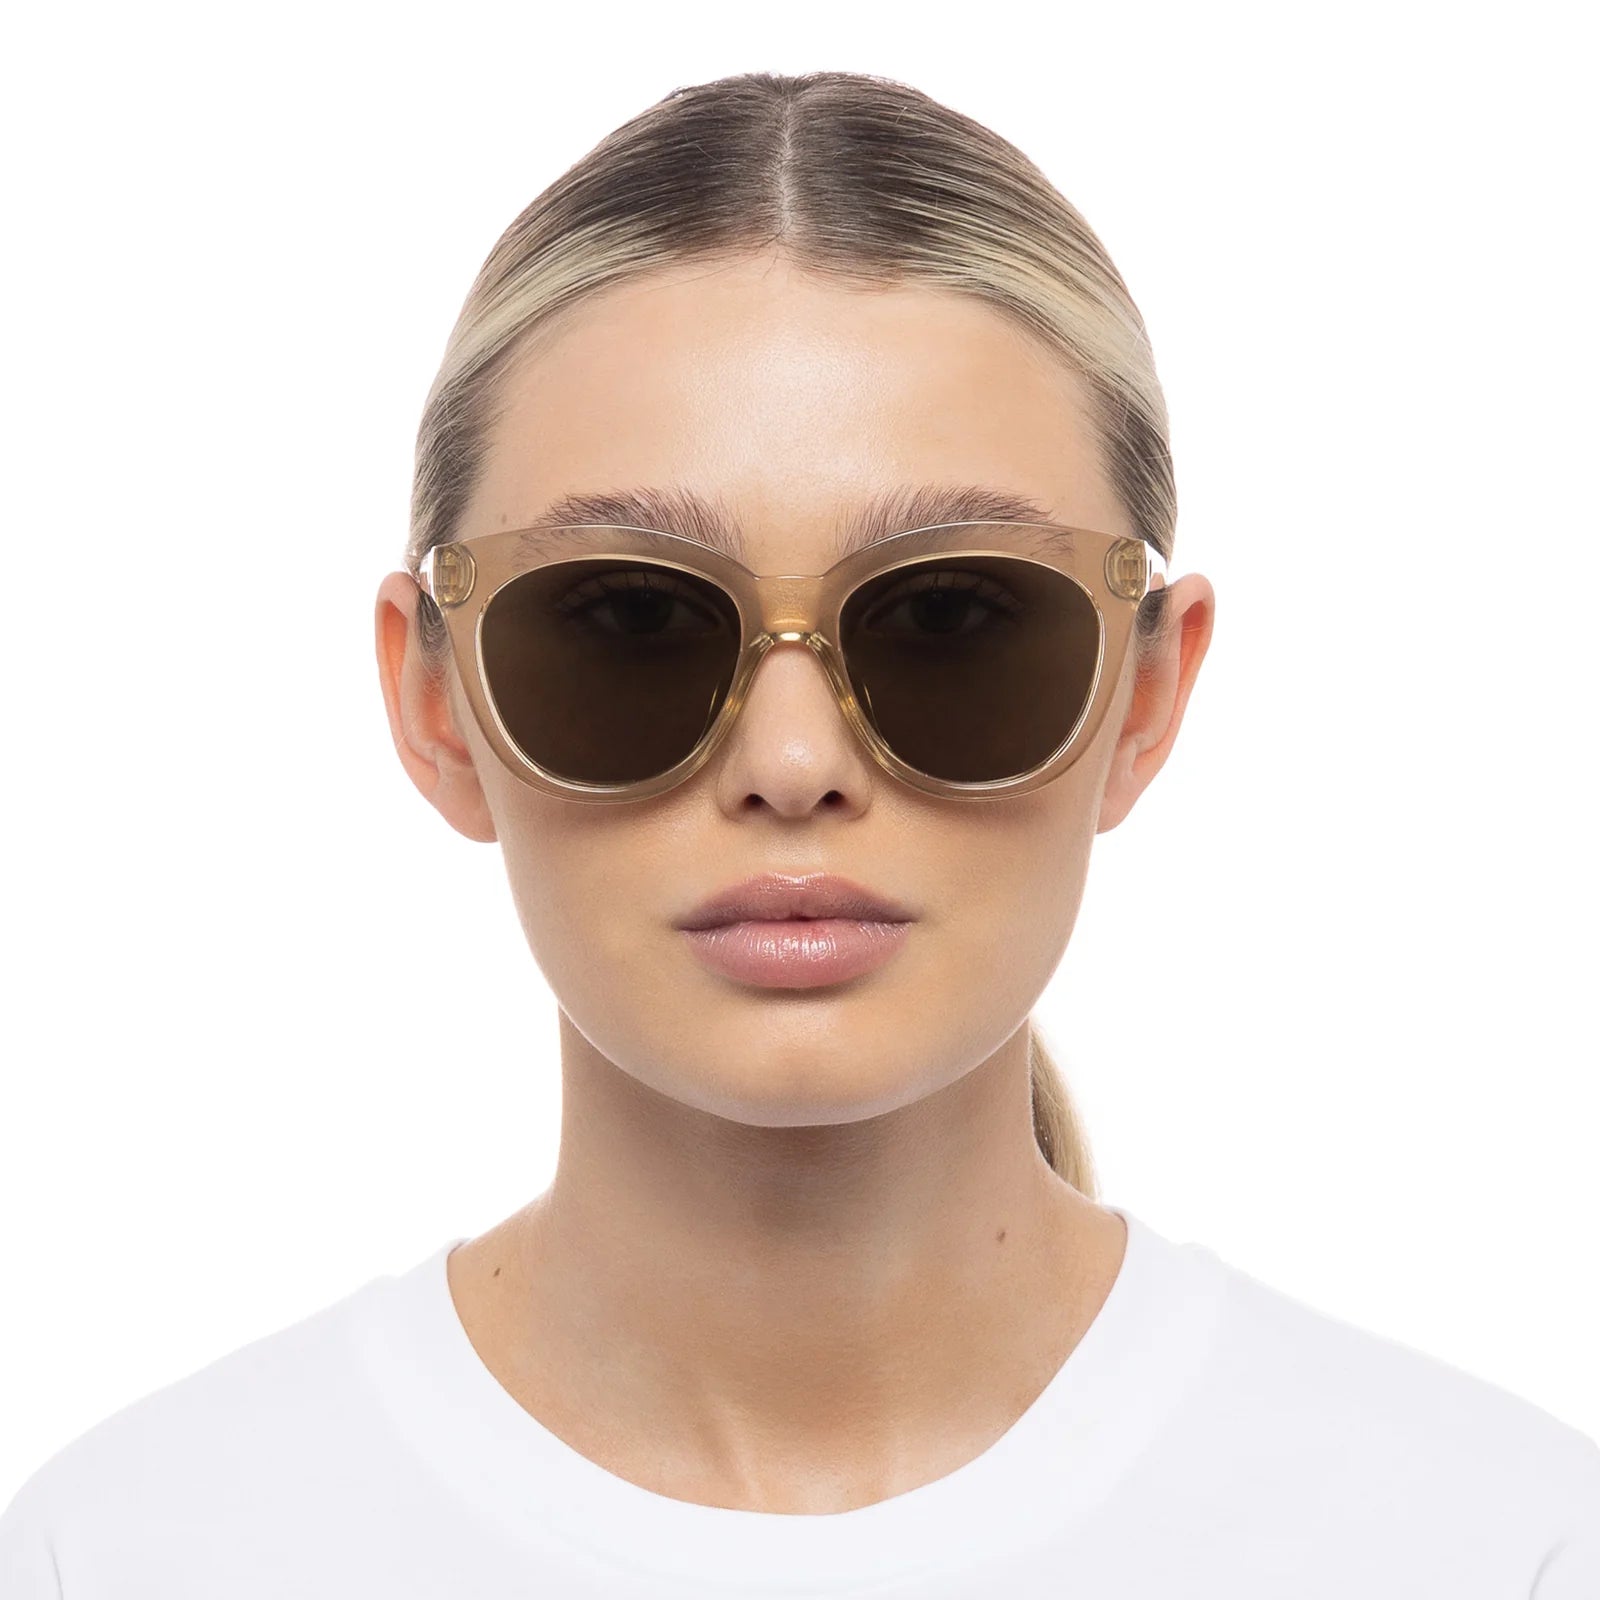 Le Sustain Sunglasses - Resumption